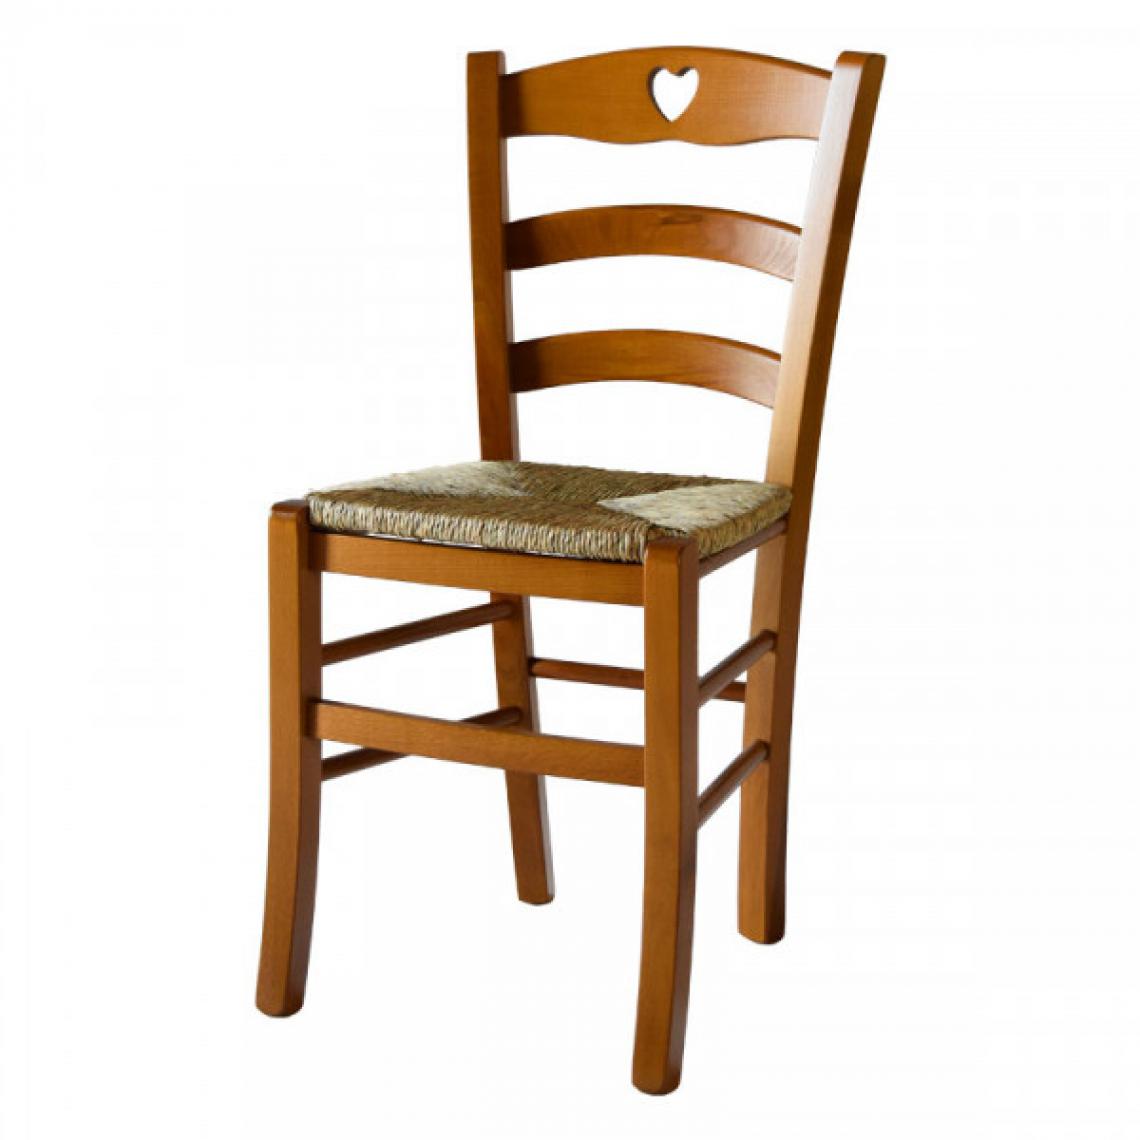 Dansmamaison - Lot de 2 chaises rustiques Chêne/Paille n°2 - PISA - L 45.5 x l 42.5 x H 88 cm - Chaises